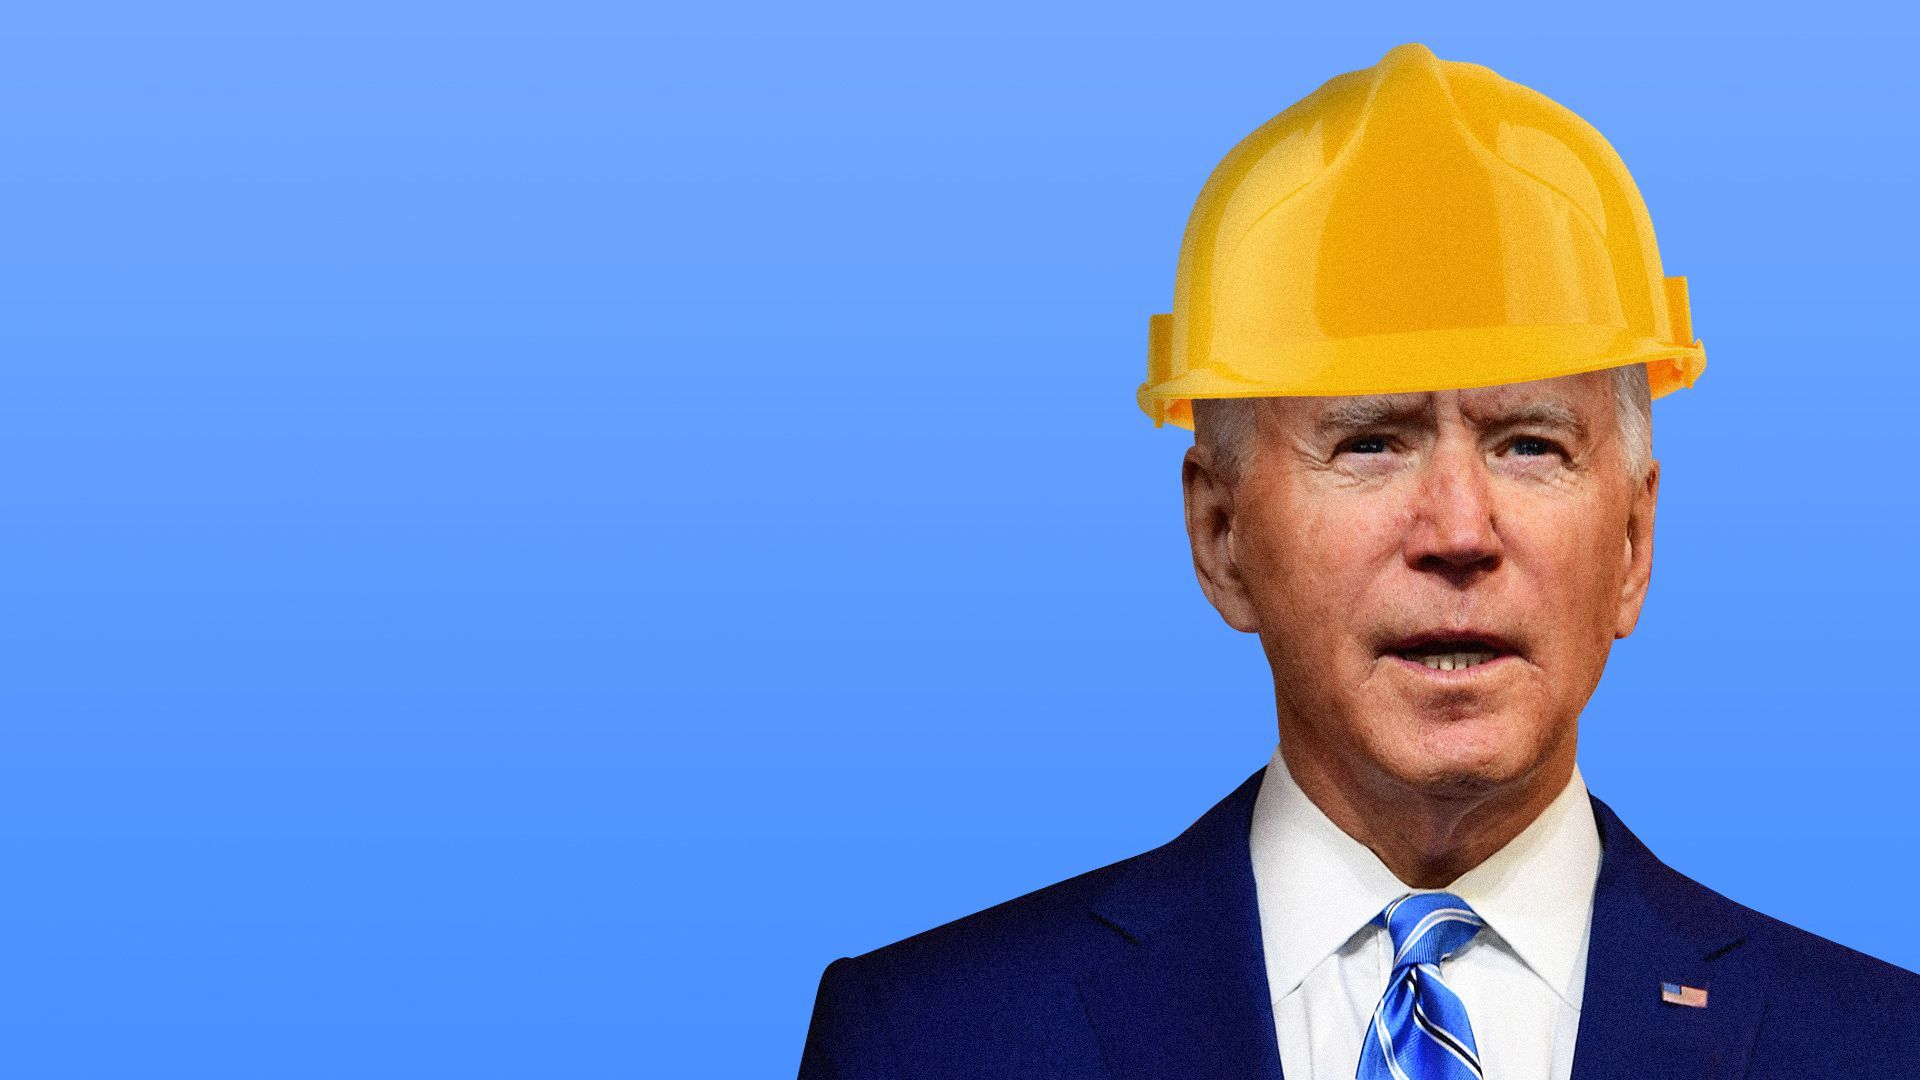 Joe Biden with hard hat on